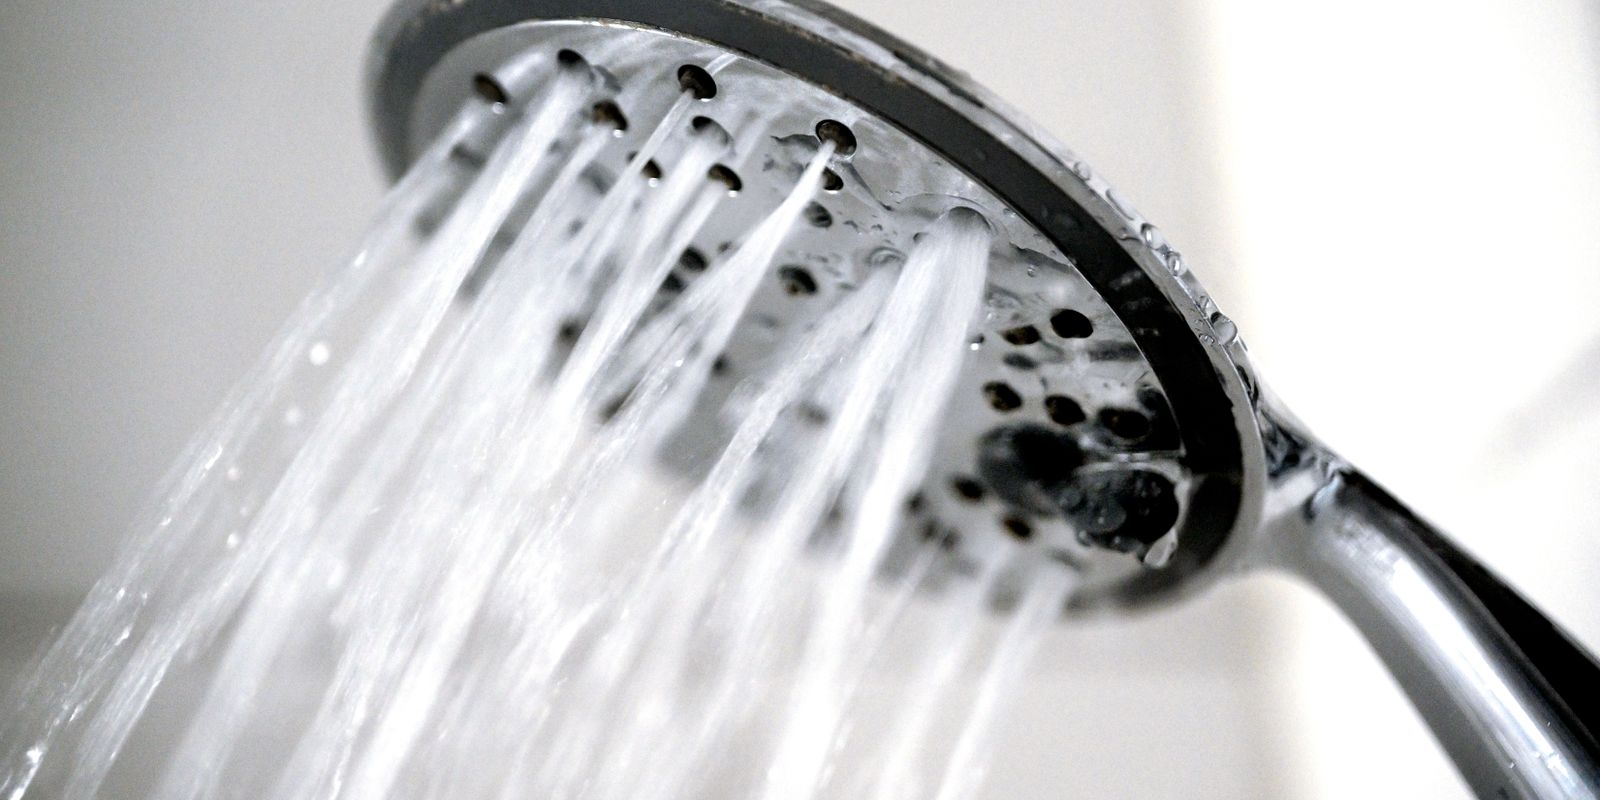 göteborgs uppmaning: duscha till schlagerdänga